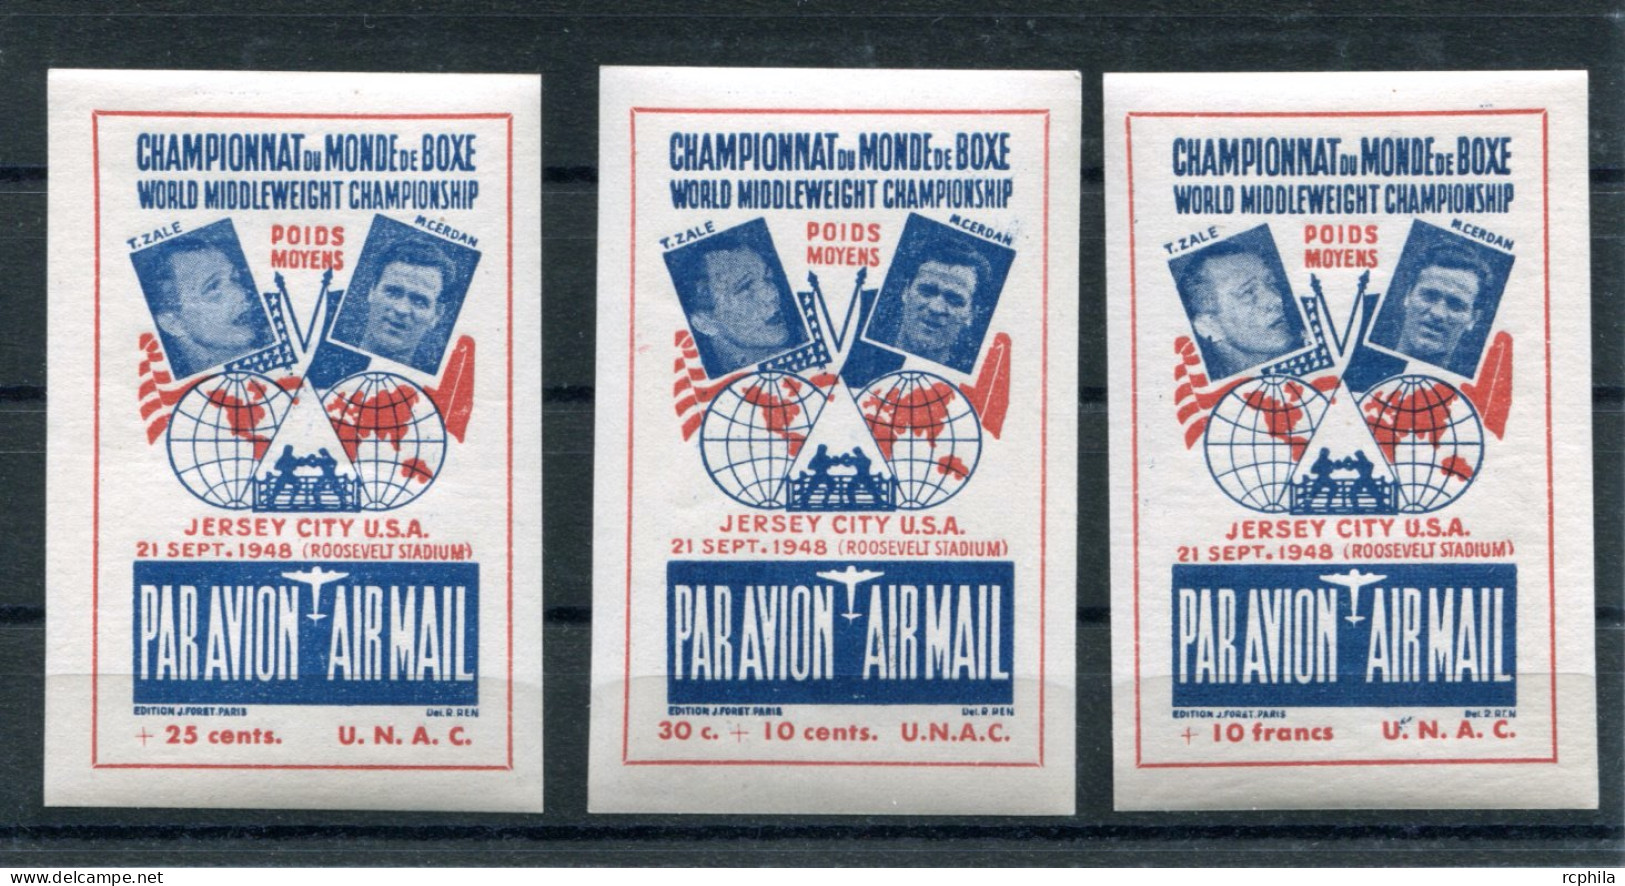 RC 26252 FRANCE 1948 CHAMPIONNAT DU MONDE DE BOXE ZALE - CERDAN 3 VIGNETTES PAR AVION DIFFERENTES NEUF ** - Deportes